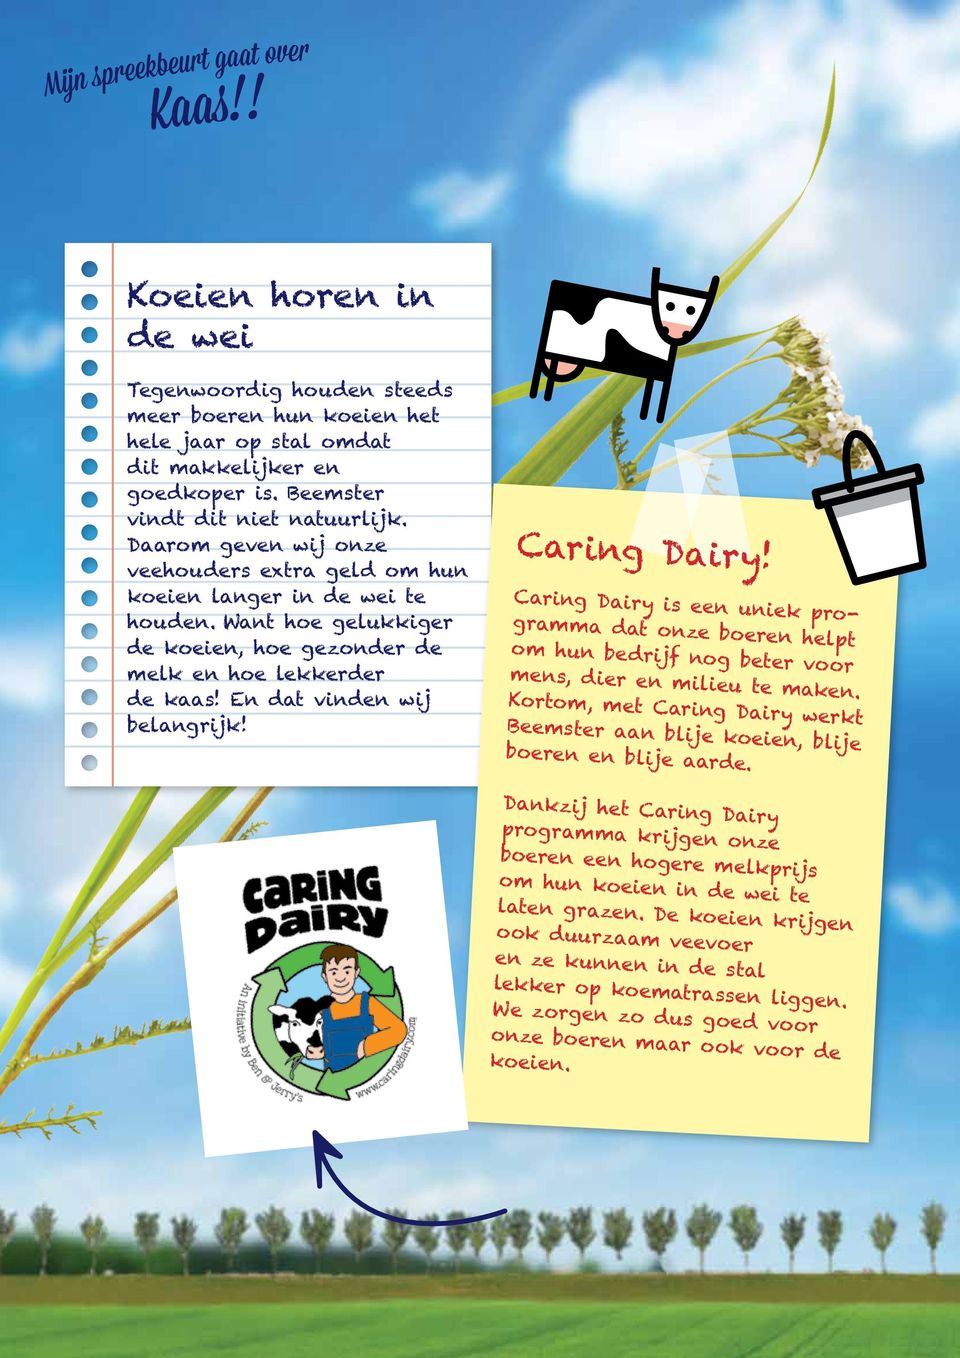 Caring Dairy! Caring Dairy is een uniek programma dat onze boeren helpt om hun bedrijf nog beter voor mens, dier en milieu te maken.